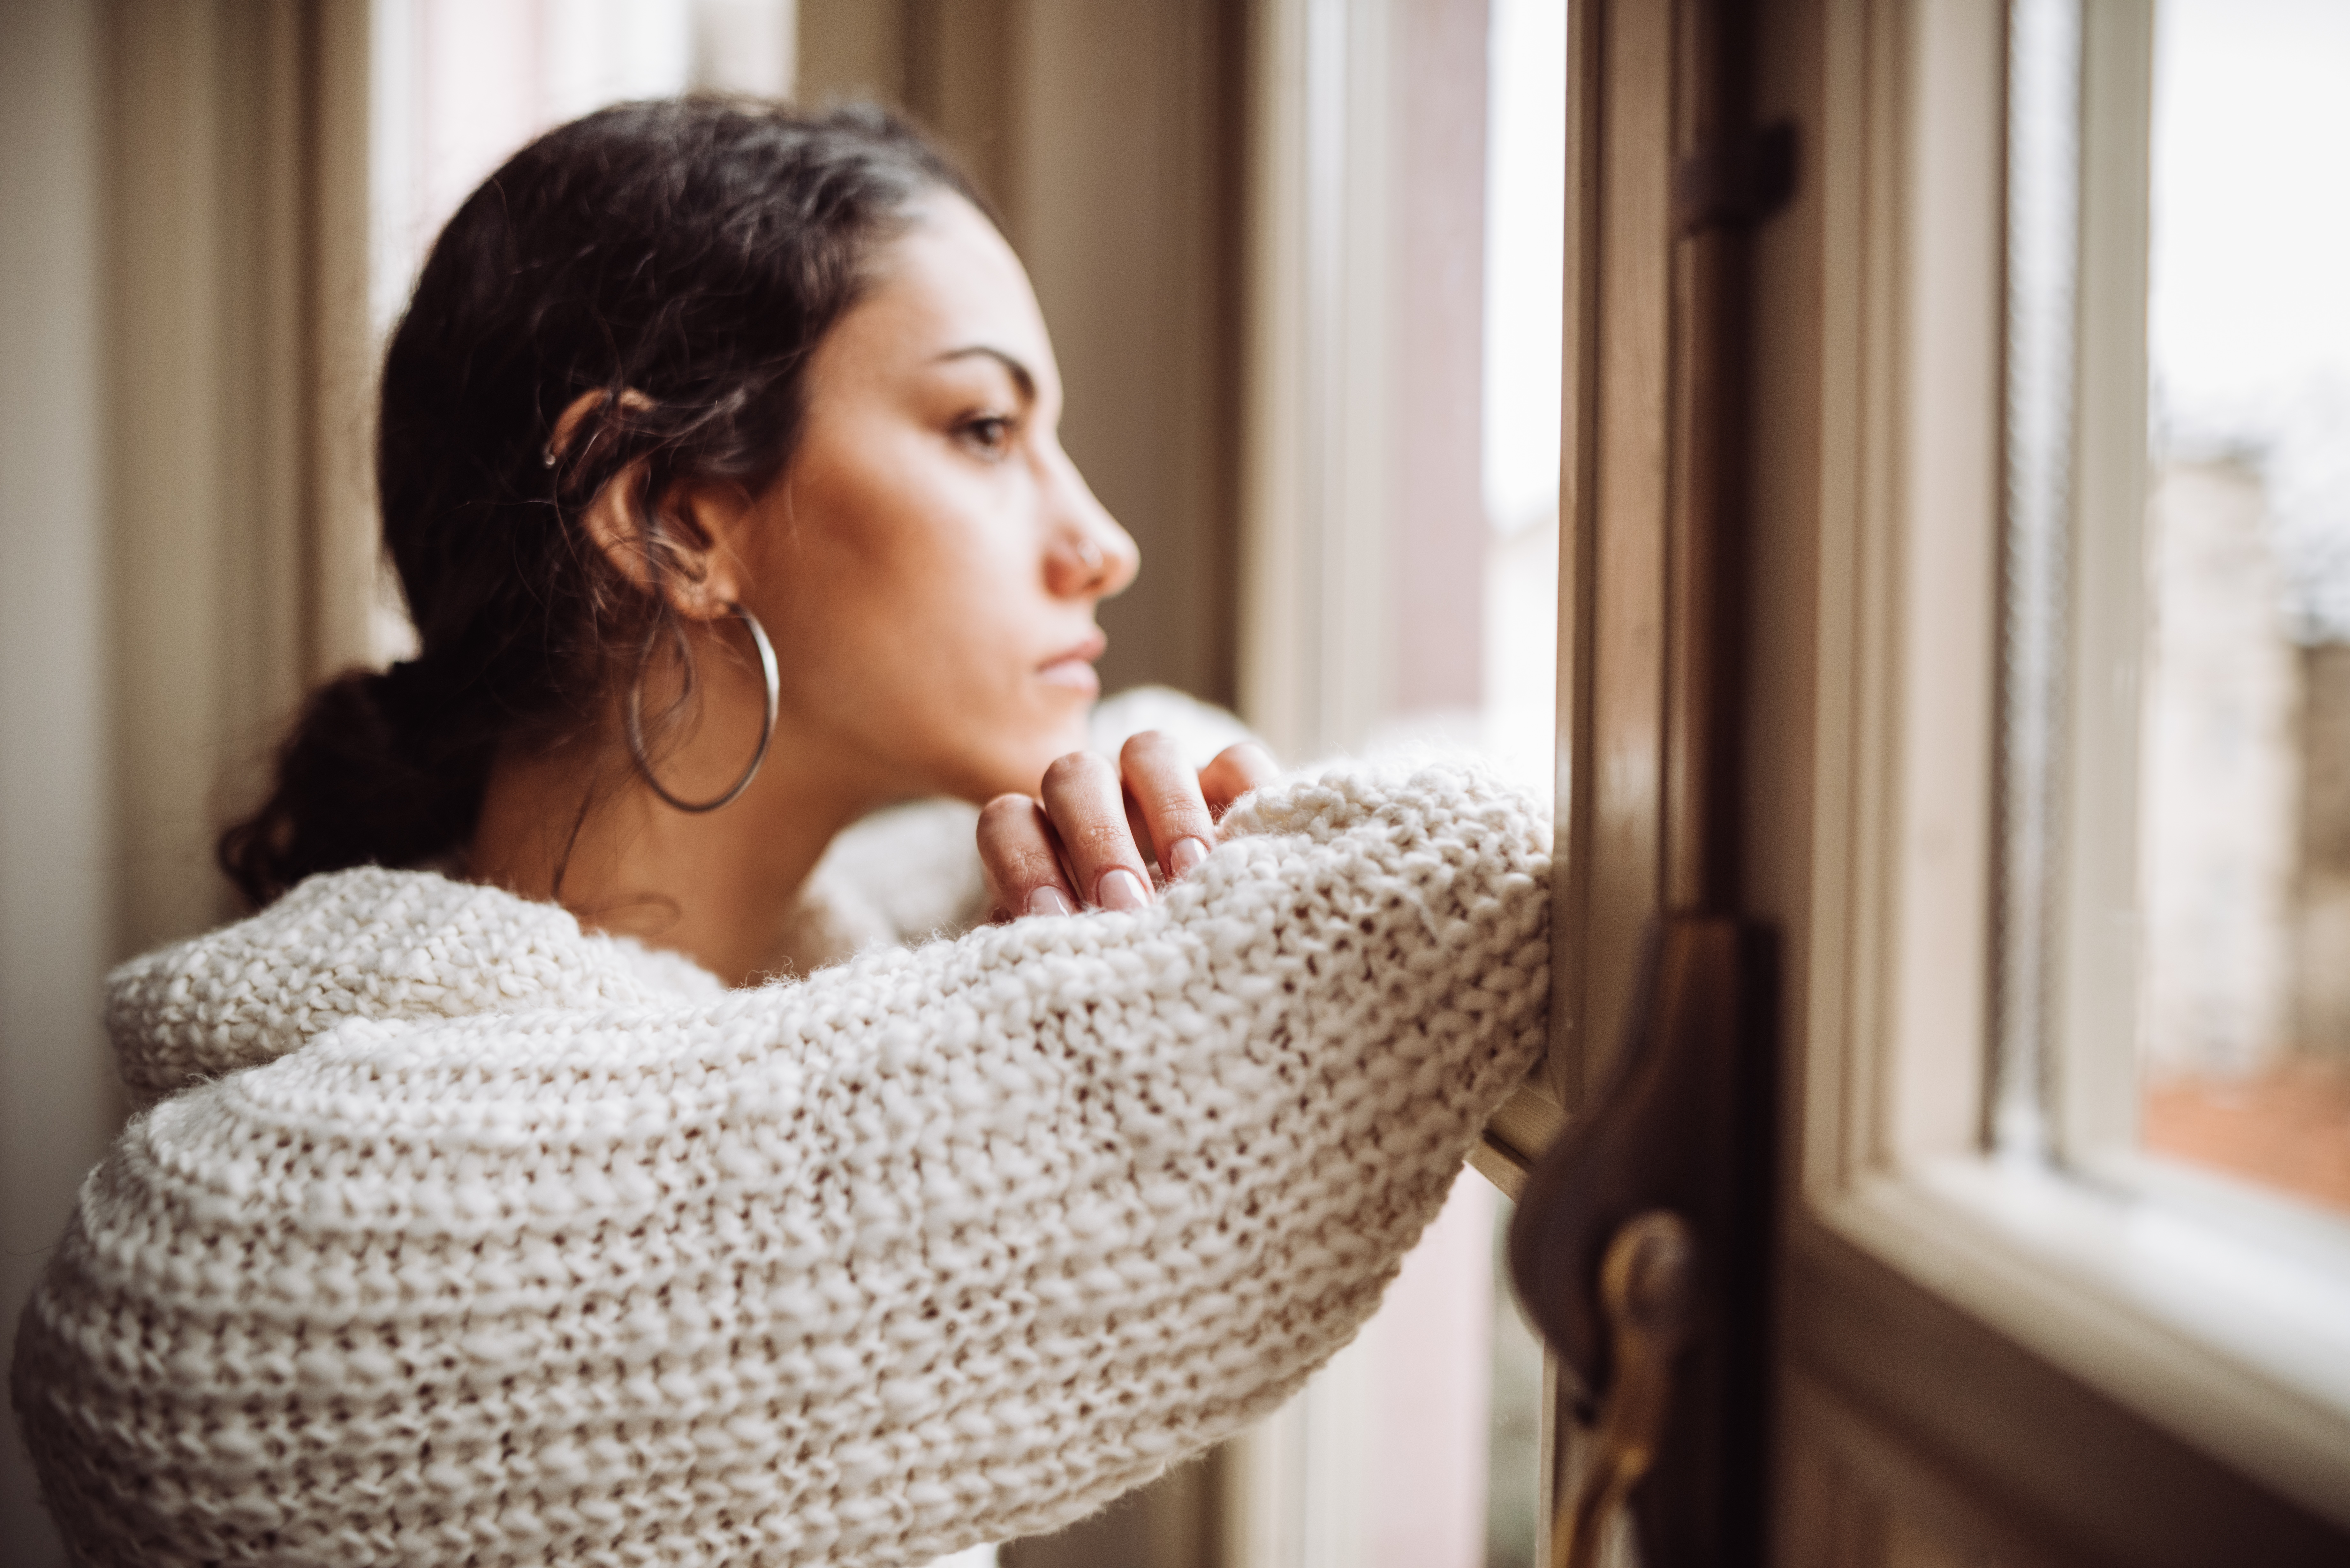 Eine nachdenkliche Frau vor dem Fenster | Quelle: Getty Images